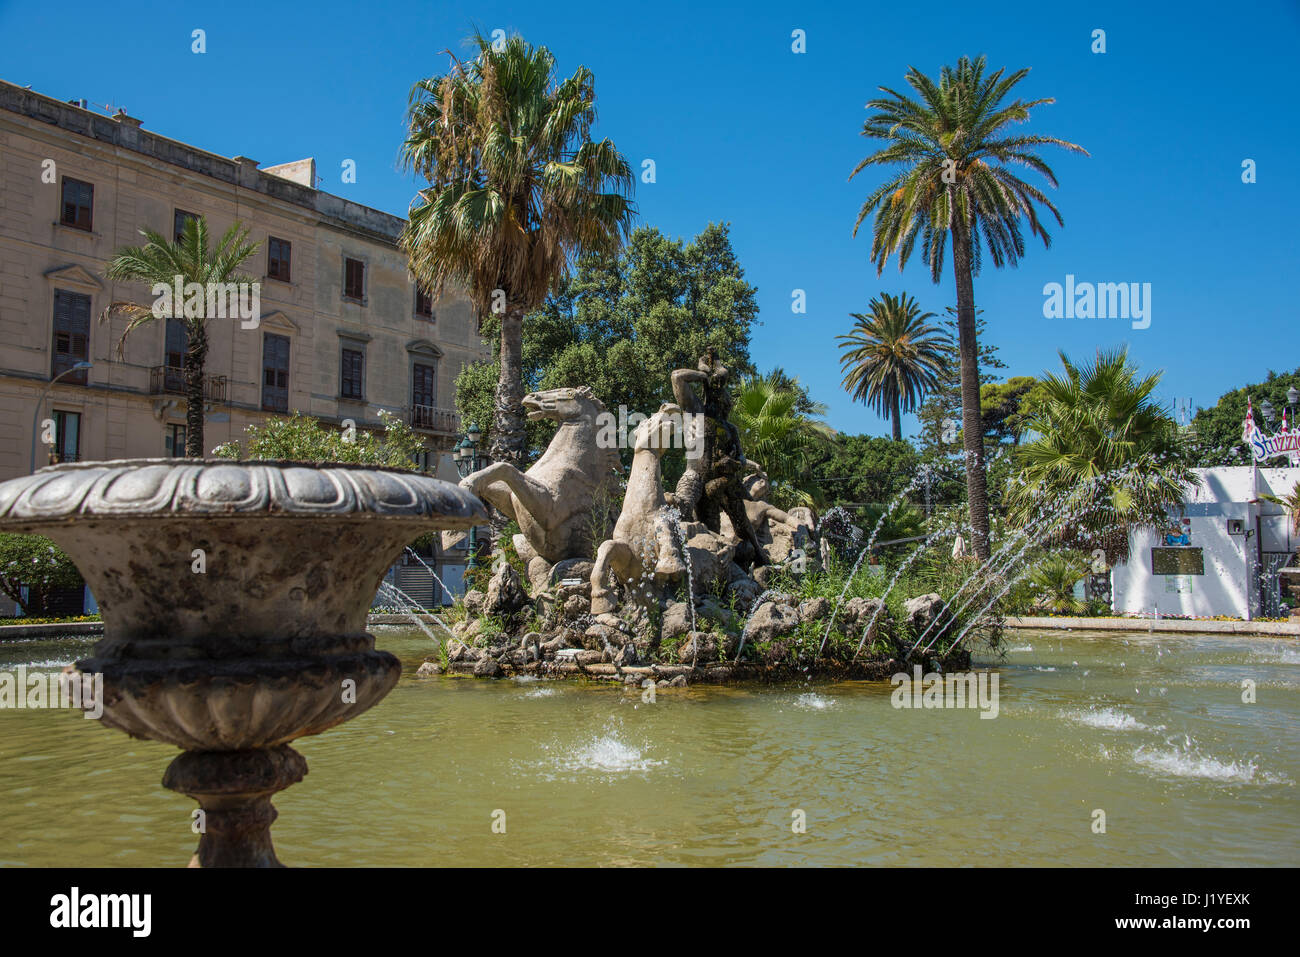 The Fontana del Tritone (Triton's Fountain) in the centre of Trapani, Sicily Stock Photo